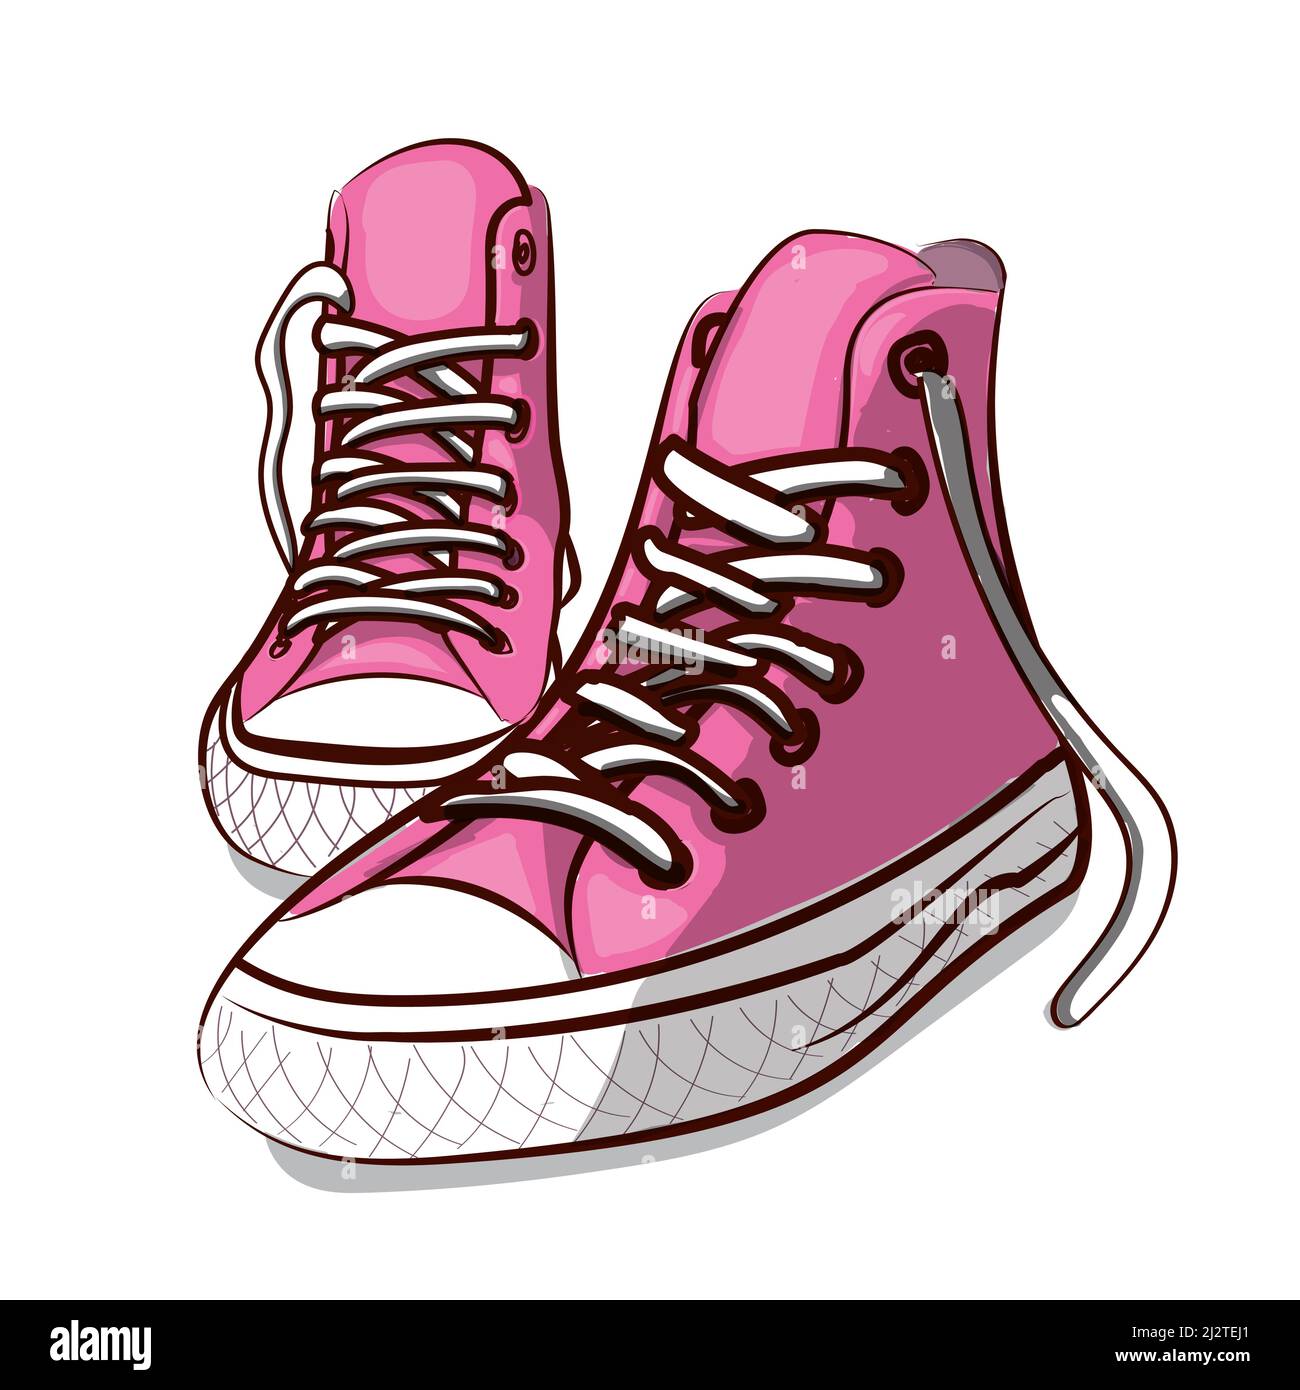 Wunderschöne rosa Sneaker. Vektorgrafik für ein Bild oder Poster. Jugendschuhe. Sport, Laufen und Gehen. Stock Vektor